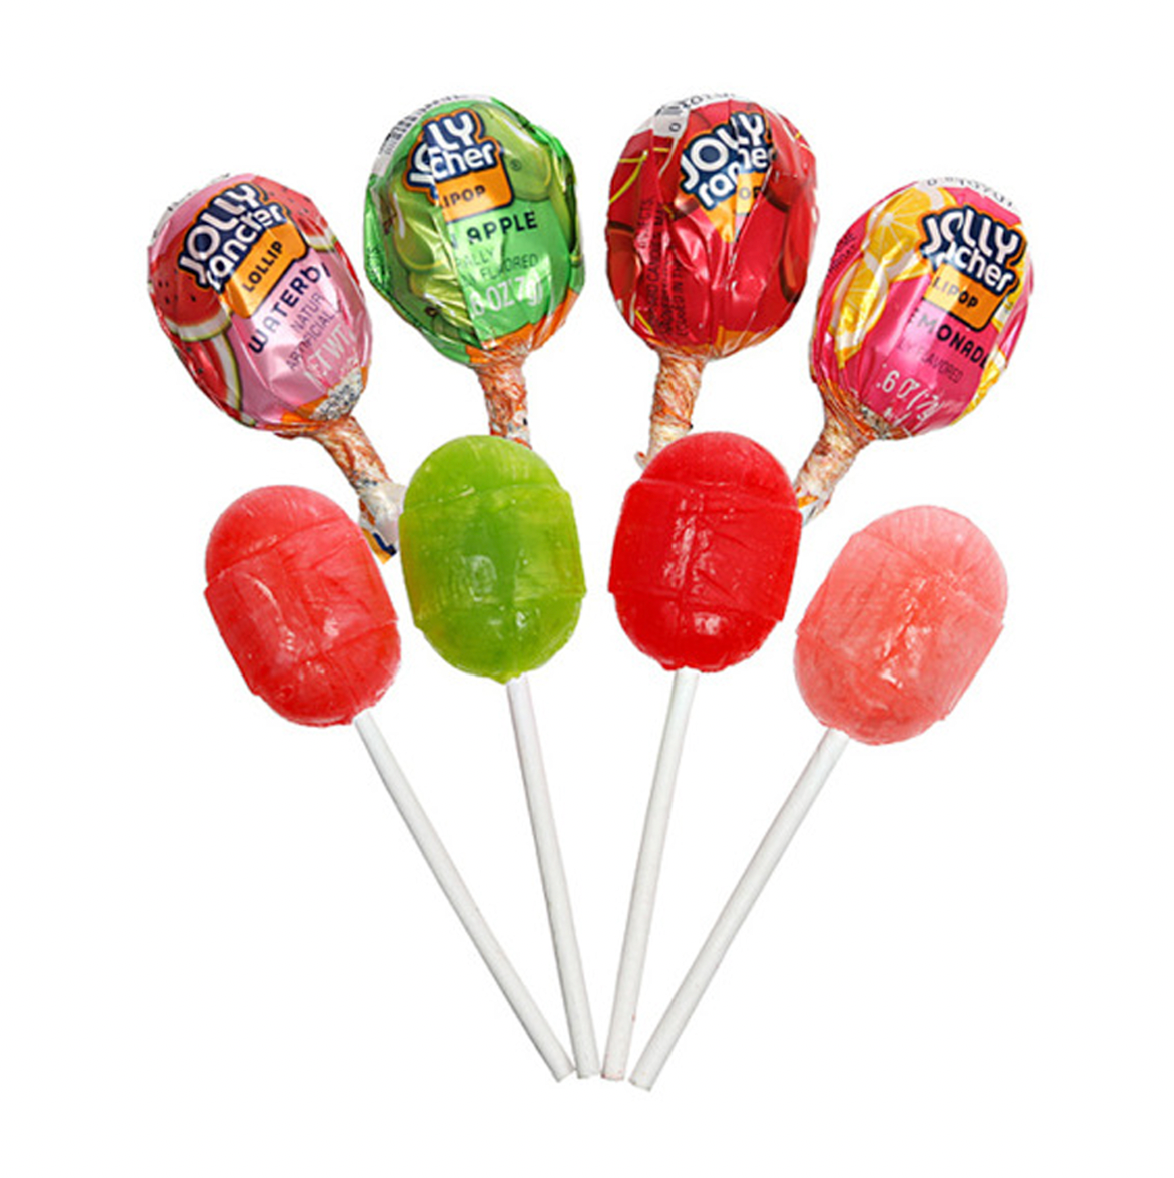 Jolly Rancher Mixed Lollipop 1pc